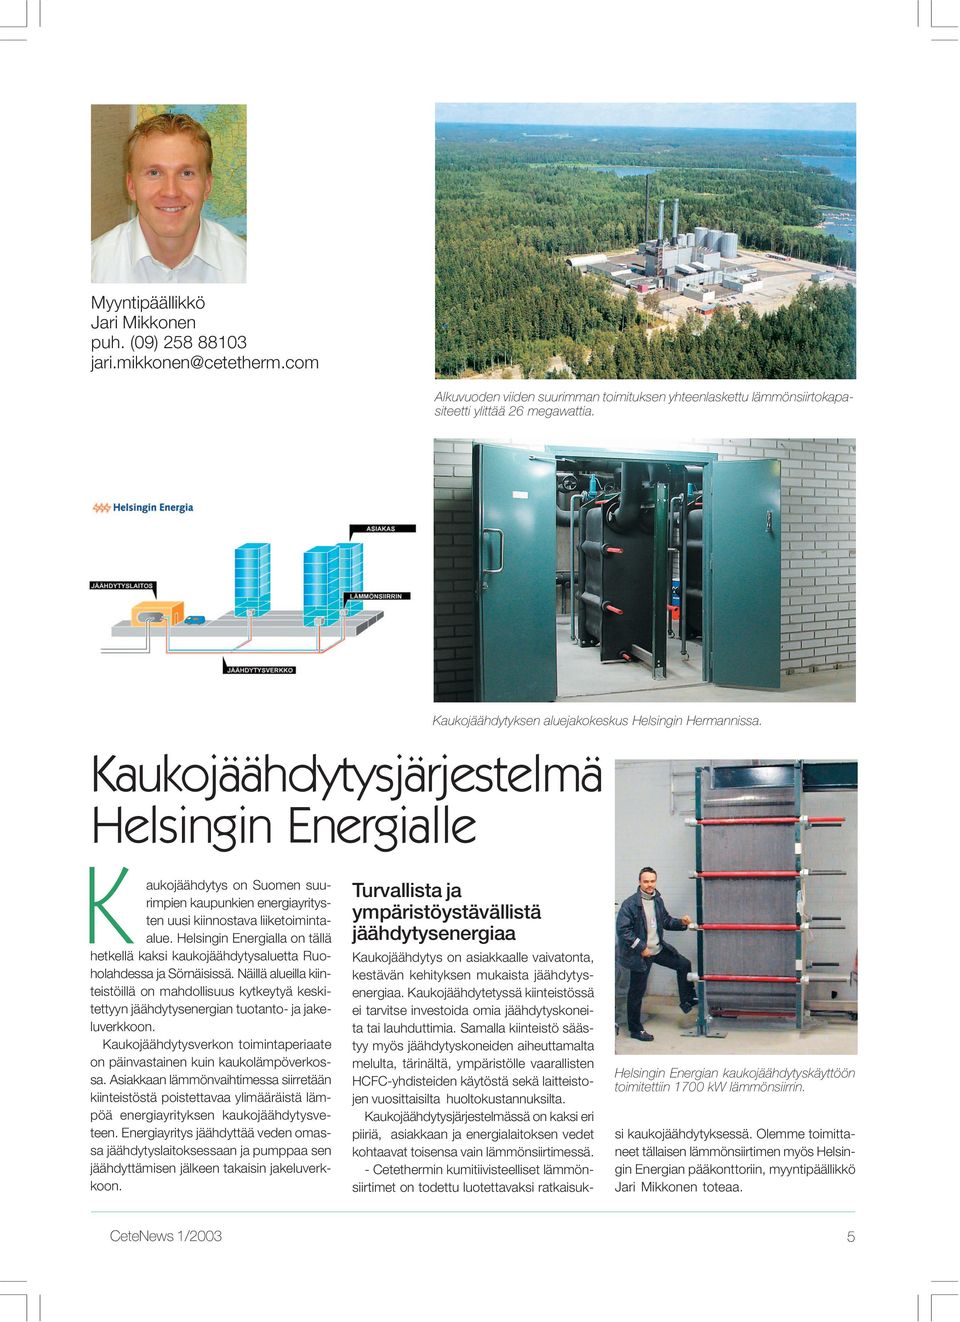 Kaukojäähdytysjärjestelmä Helsingin Energialle K aukojäähdytys on Suomen suurimpien kaupunkien energiayritysten uusi kiinnostava liiketoimintaalue.